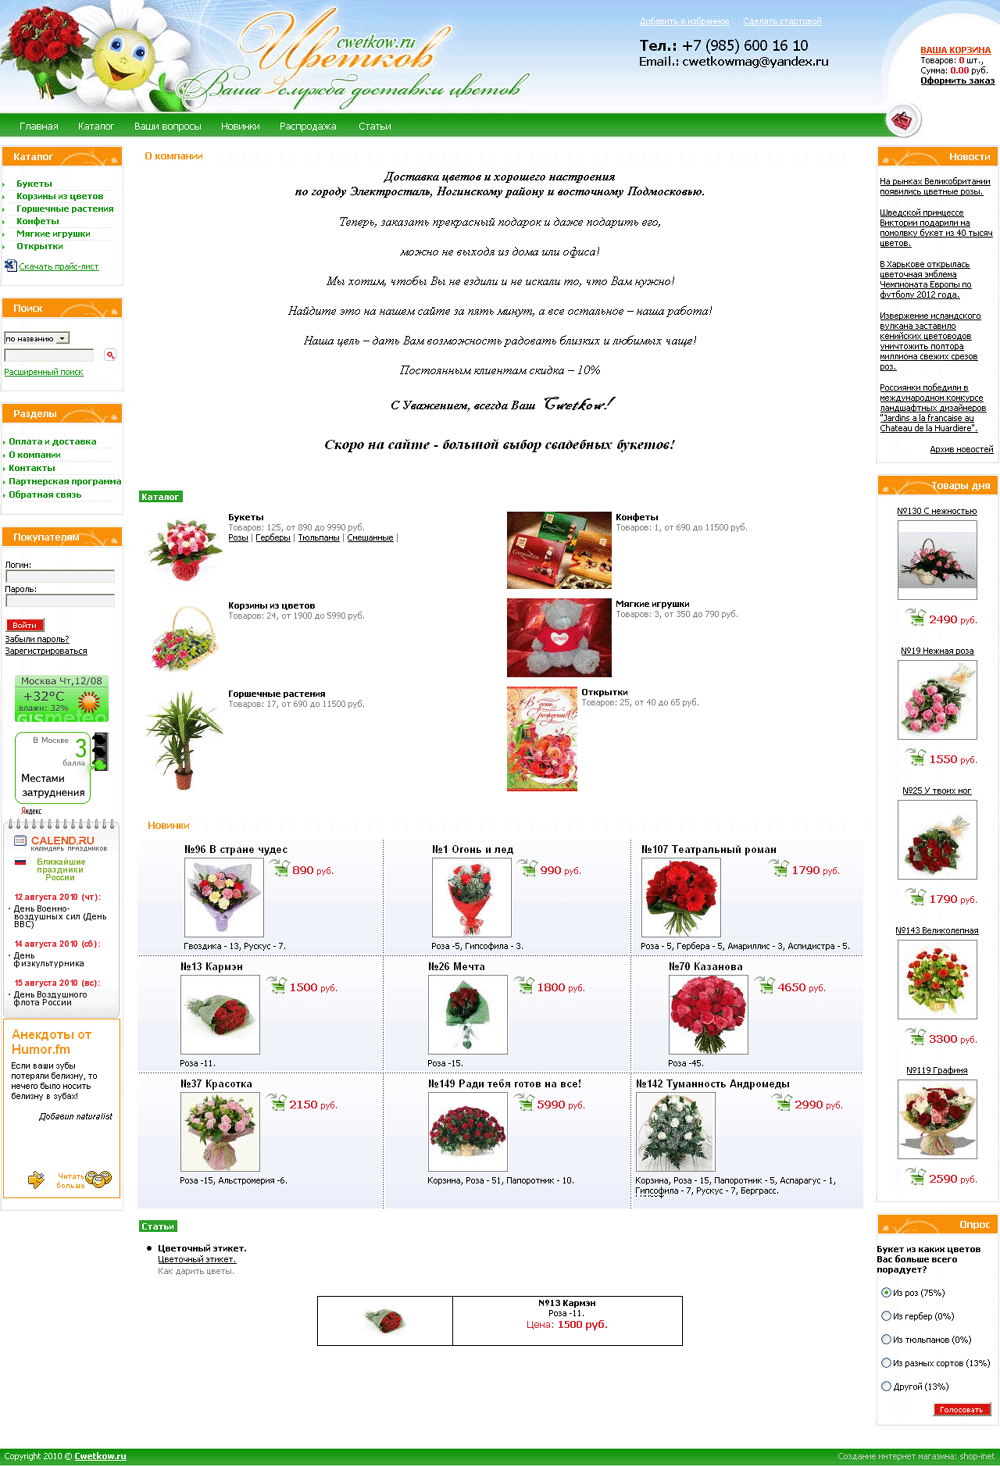 Cозданый интернет-магазин цветов и служба их доставки